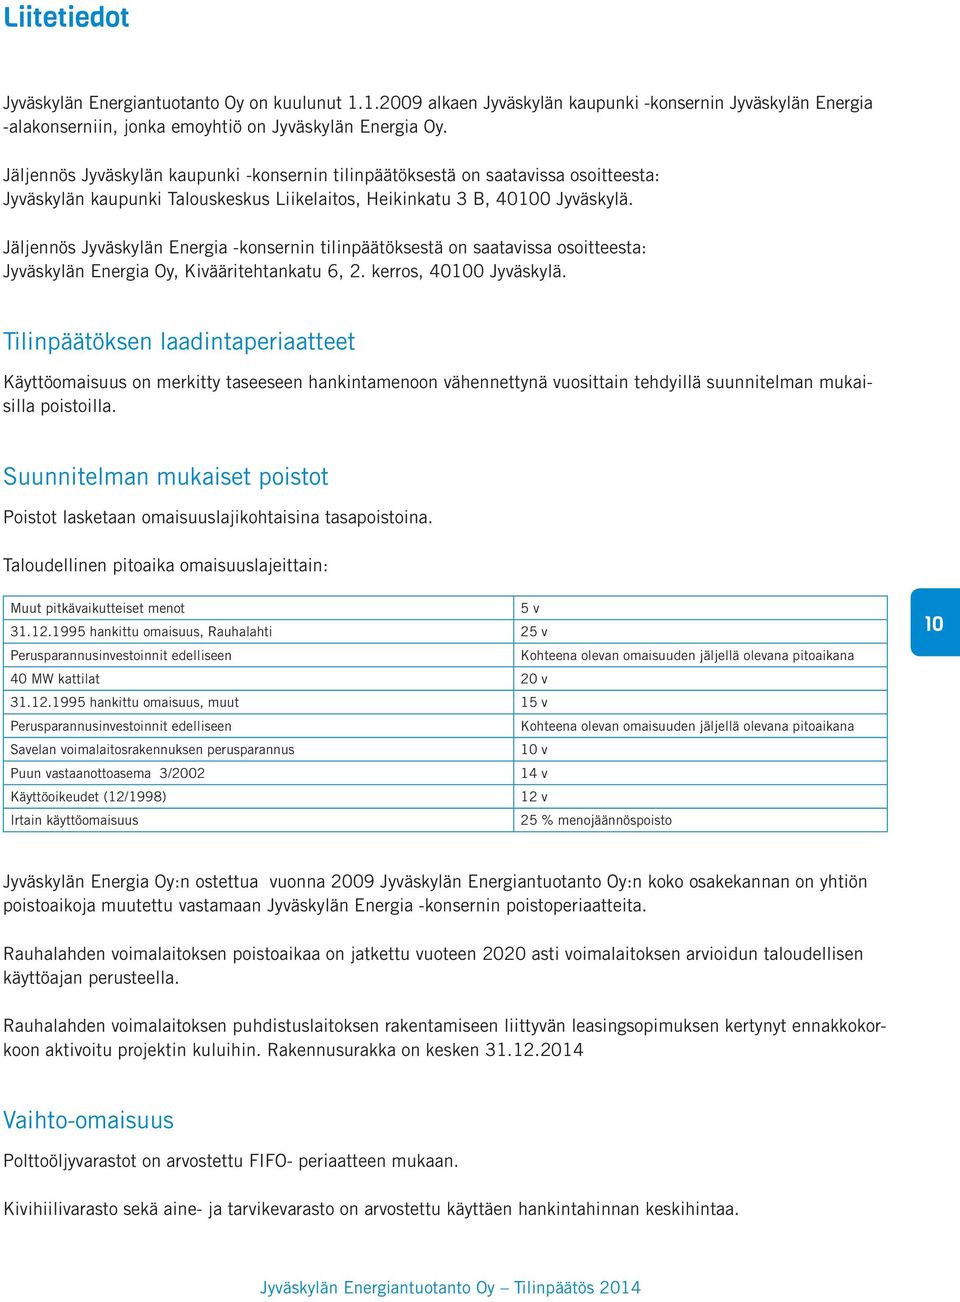 Jäljennös Jyväskylän Energia -konsernin tilinpäätöksestä on saatavissa osoitteesta: Jyväskylän Energia Oy, Kivääritehtankatu 6, 2. kerros, 40100 Jyväskylä.